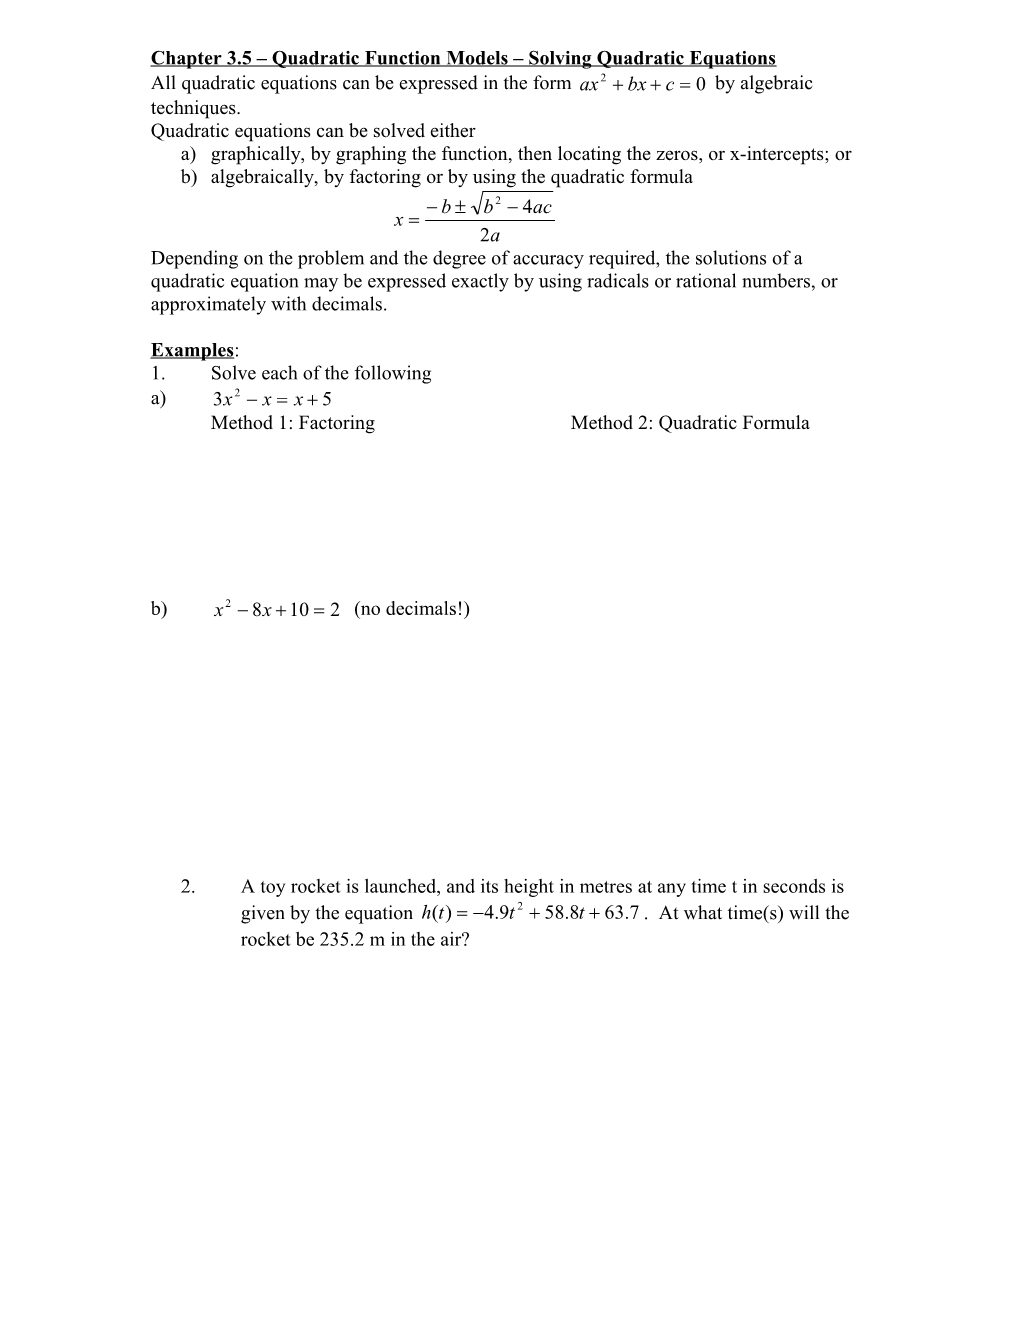 Chapter 3.5 Quadratic Function Models Solving Quadratic Equations